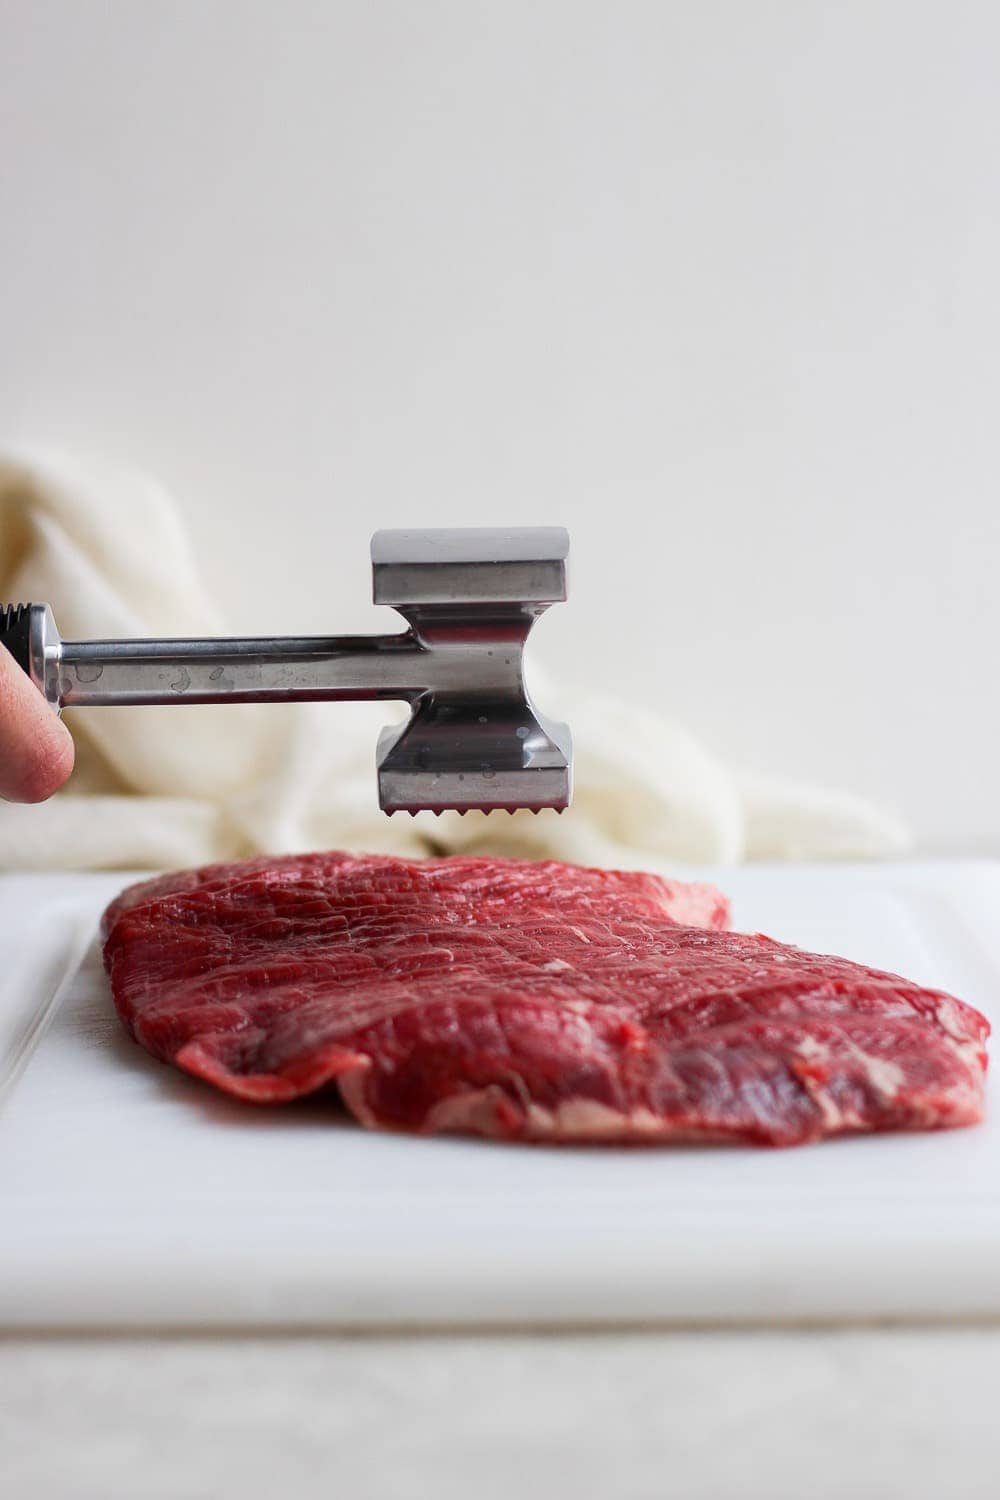 Meat tenderizer pounding flank steak.